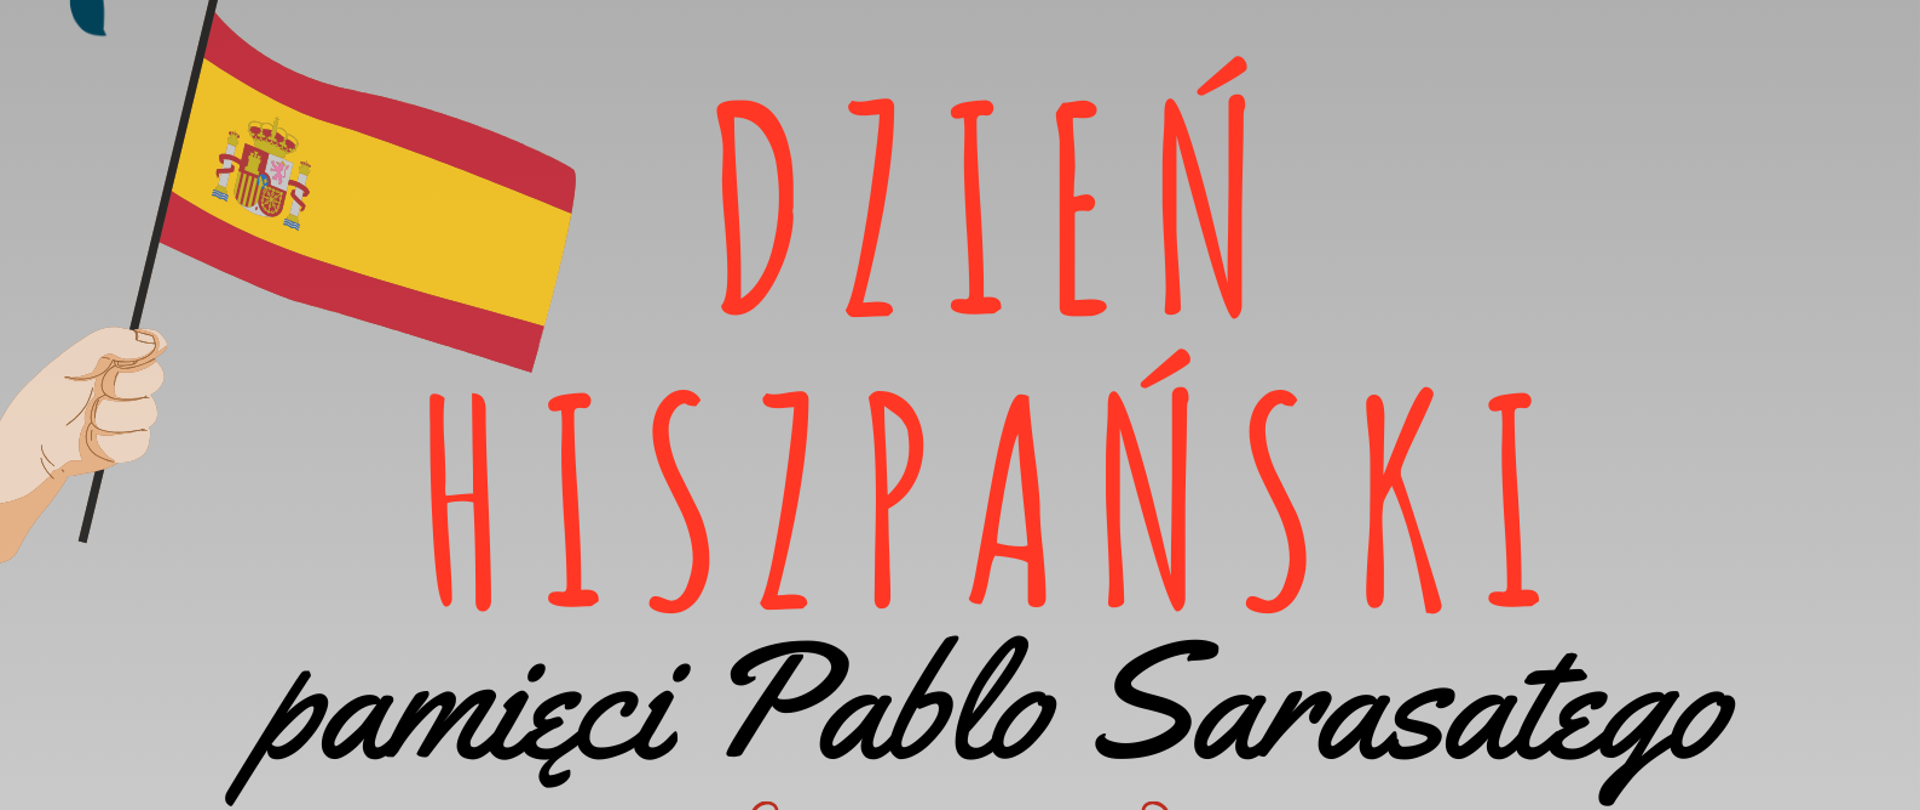 plakat w szaro-czerwonej tonacji, zapowiadający koncerty z okazji Dnia hiszpańskiego pamięci Pablo Sarasatego